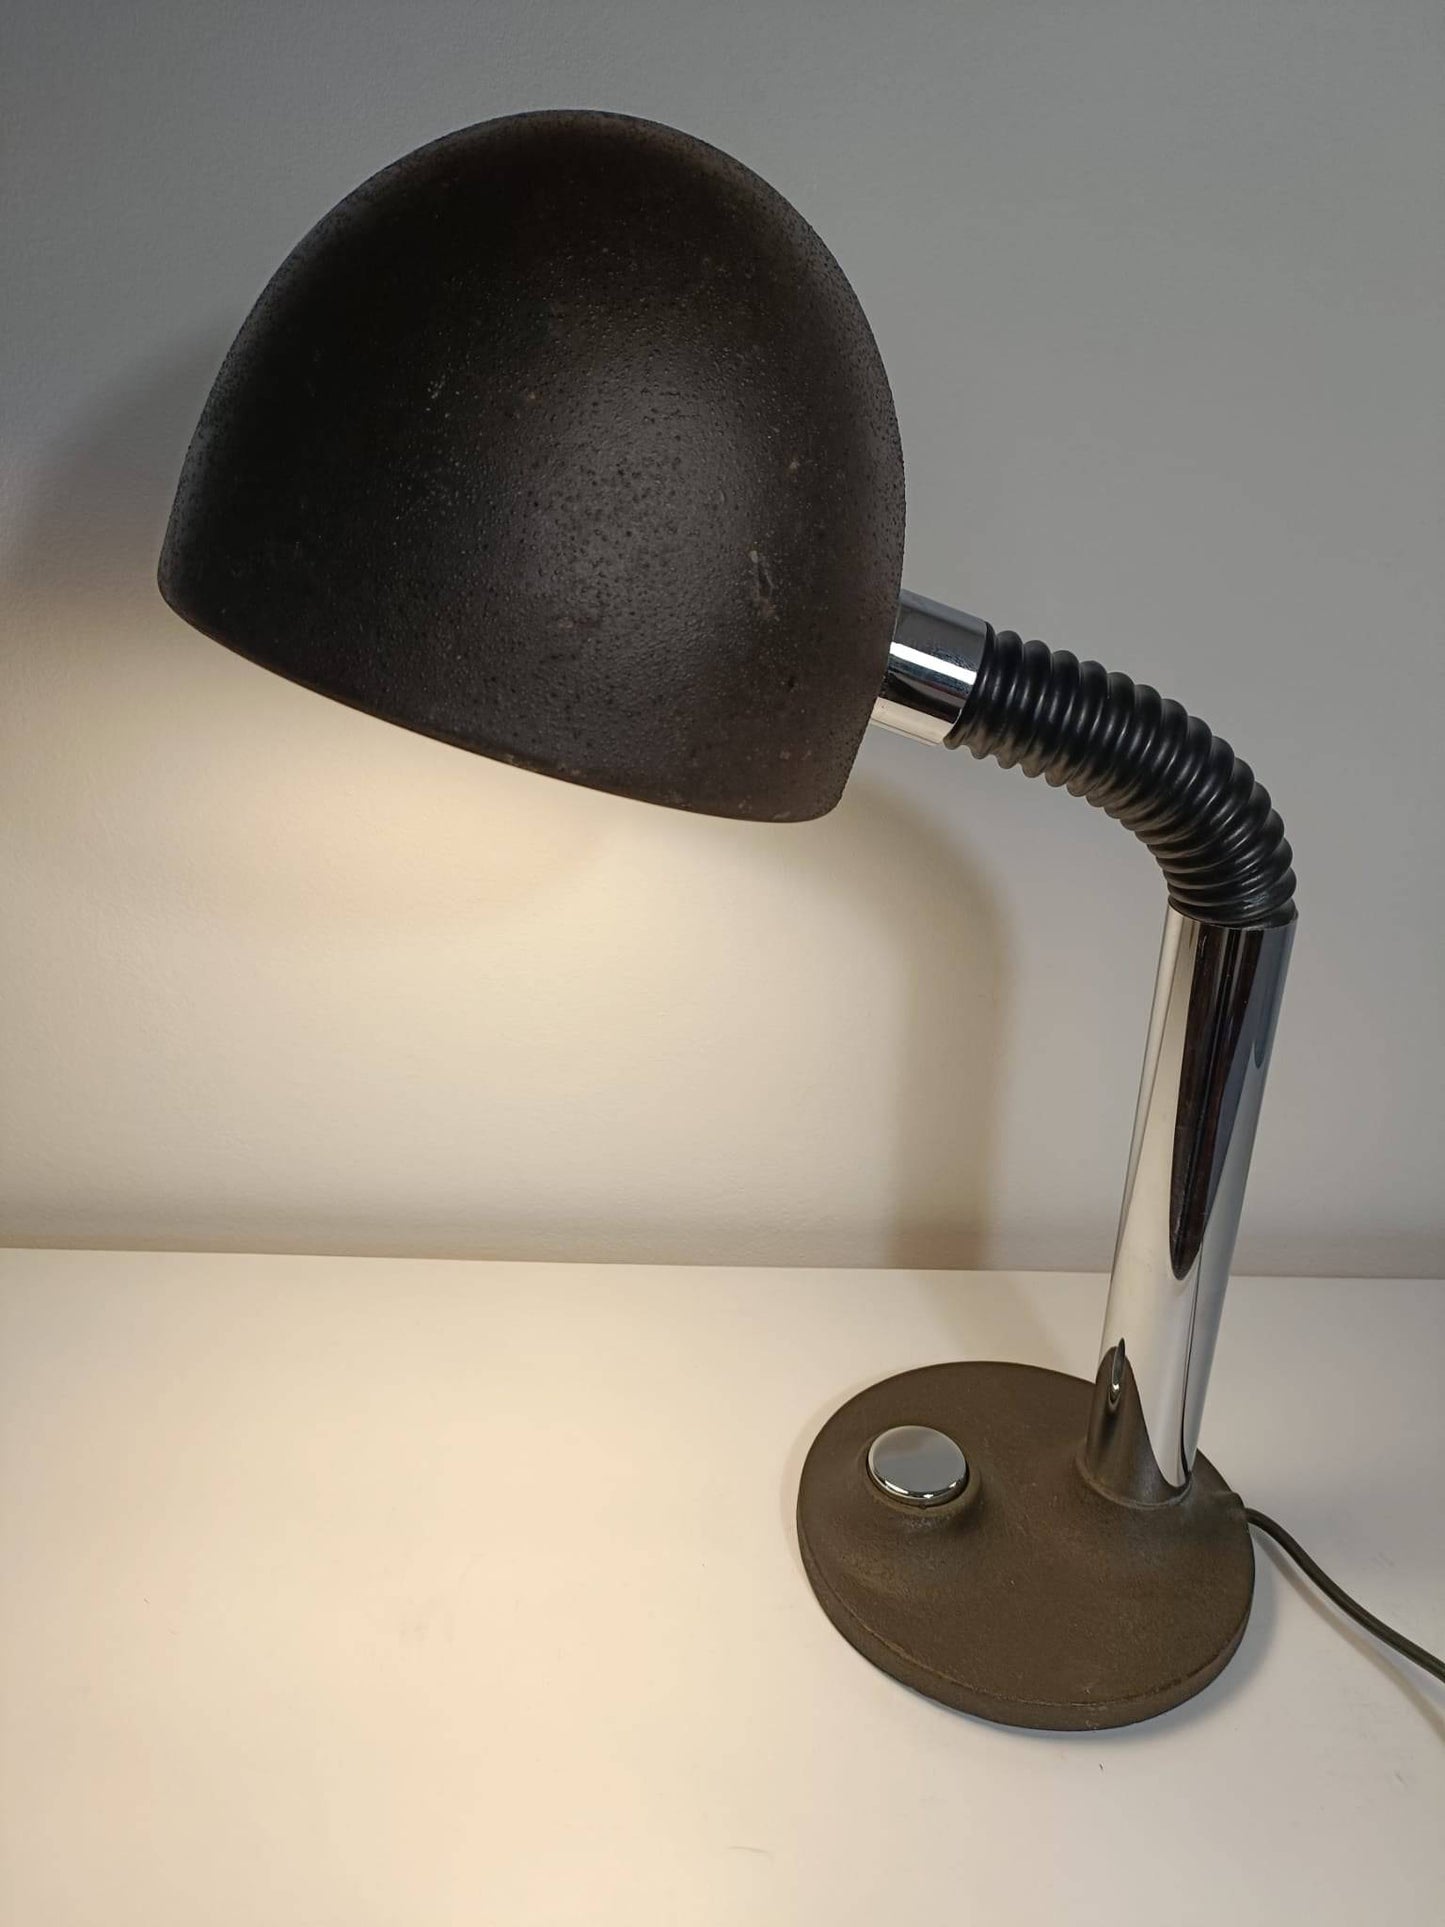 Lampe de bureau Egon Hillebrand - cetaitmieuxavant